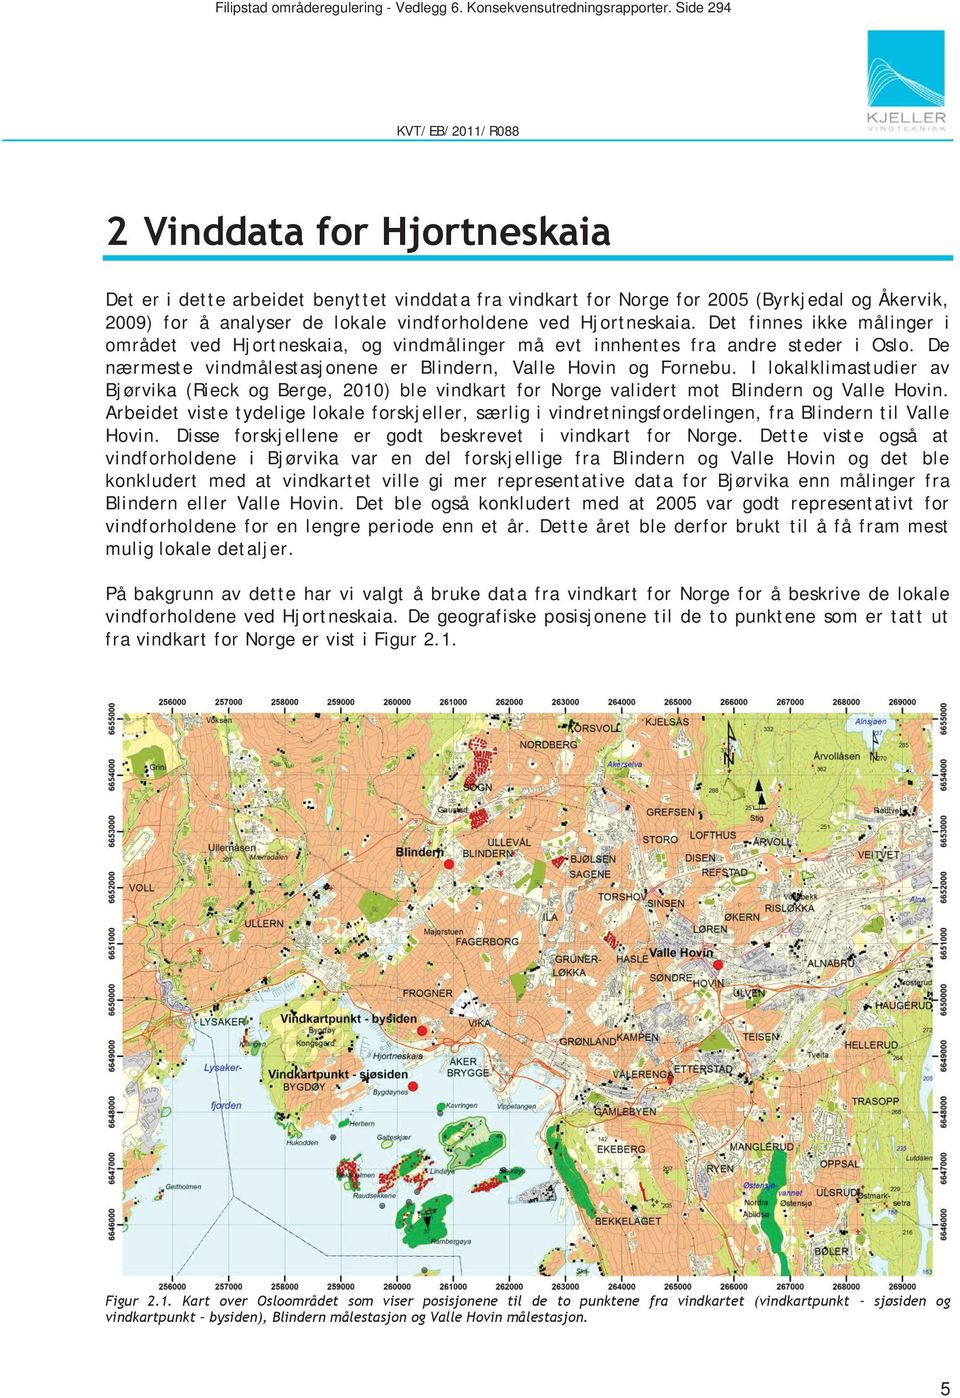 Det finnes ikke målinger i området ved Hjortneskaia, og vindmålinger må evt innhentes fra andre steder i Oslo. De nærmeste vindmålestasjonene er Blindern, Valle Hovin og Fornebu.